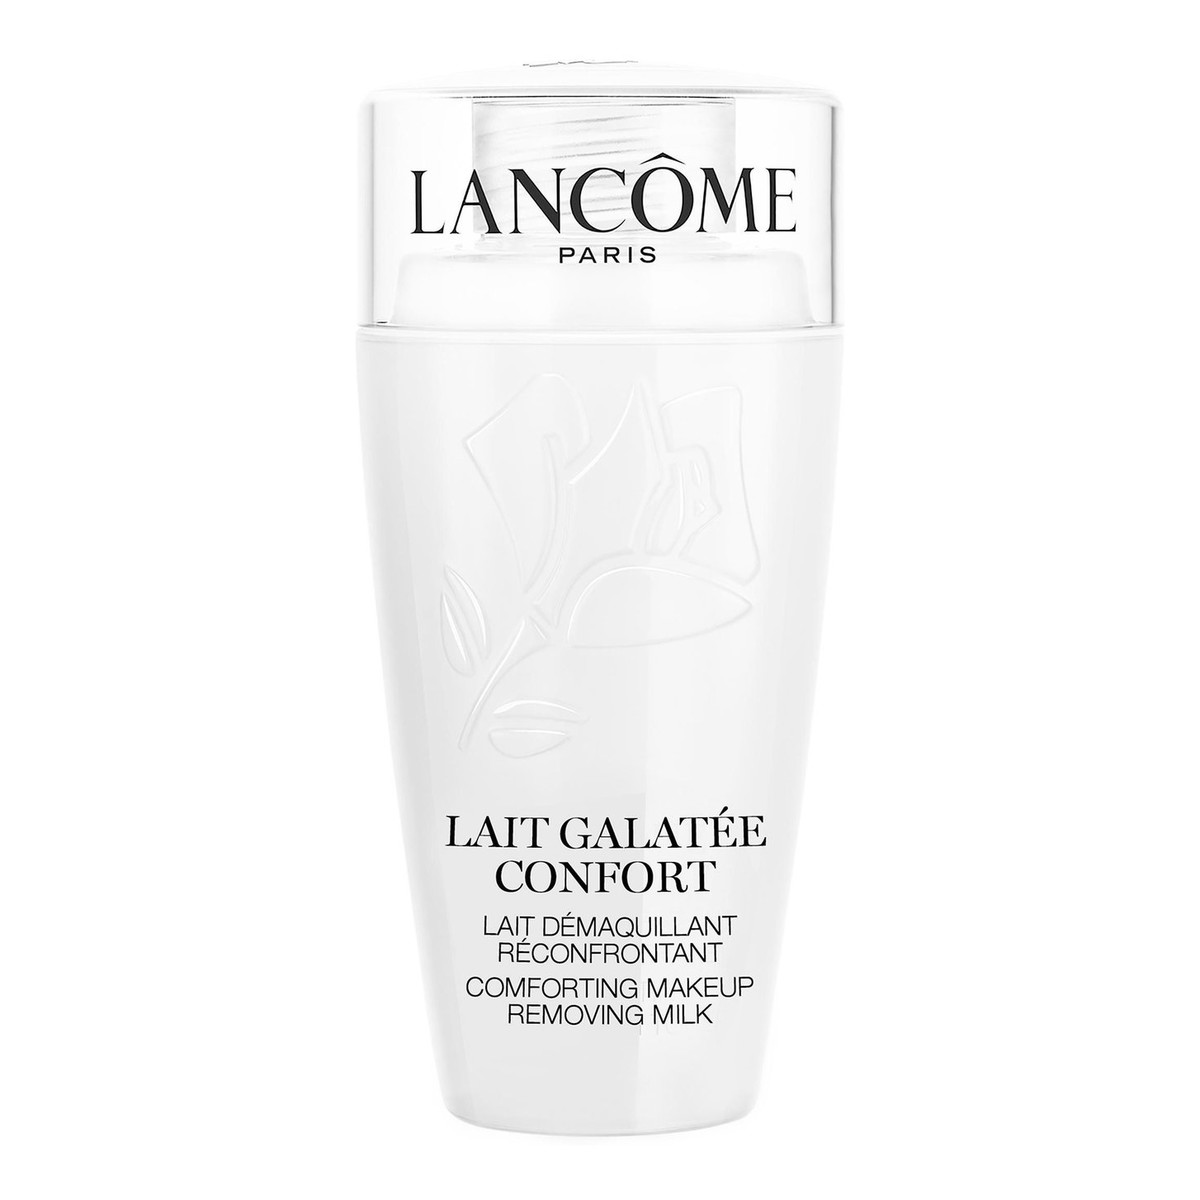 Lancome Lait Galatee Confort komfortowe mleczko do demakijażu do skóry suchej 75ml